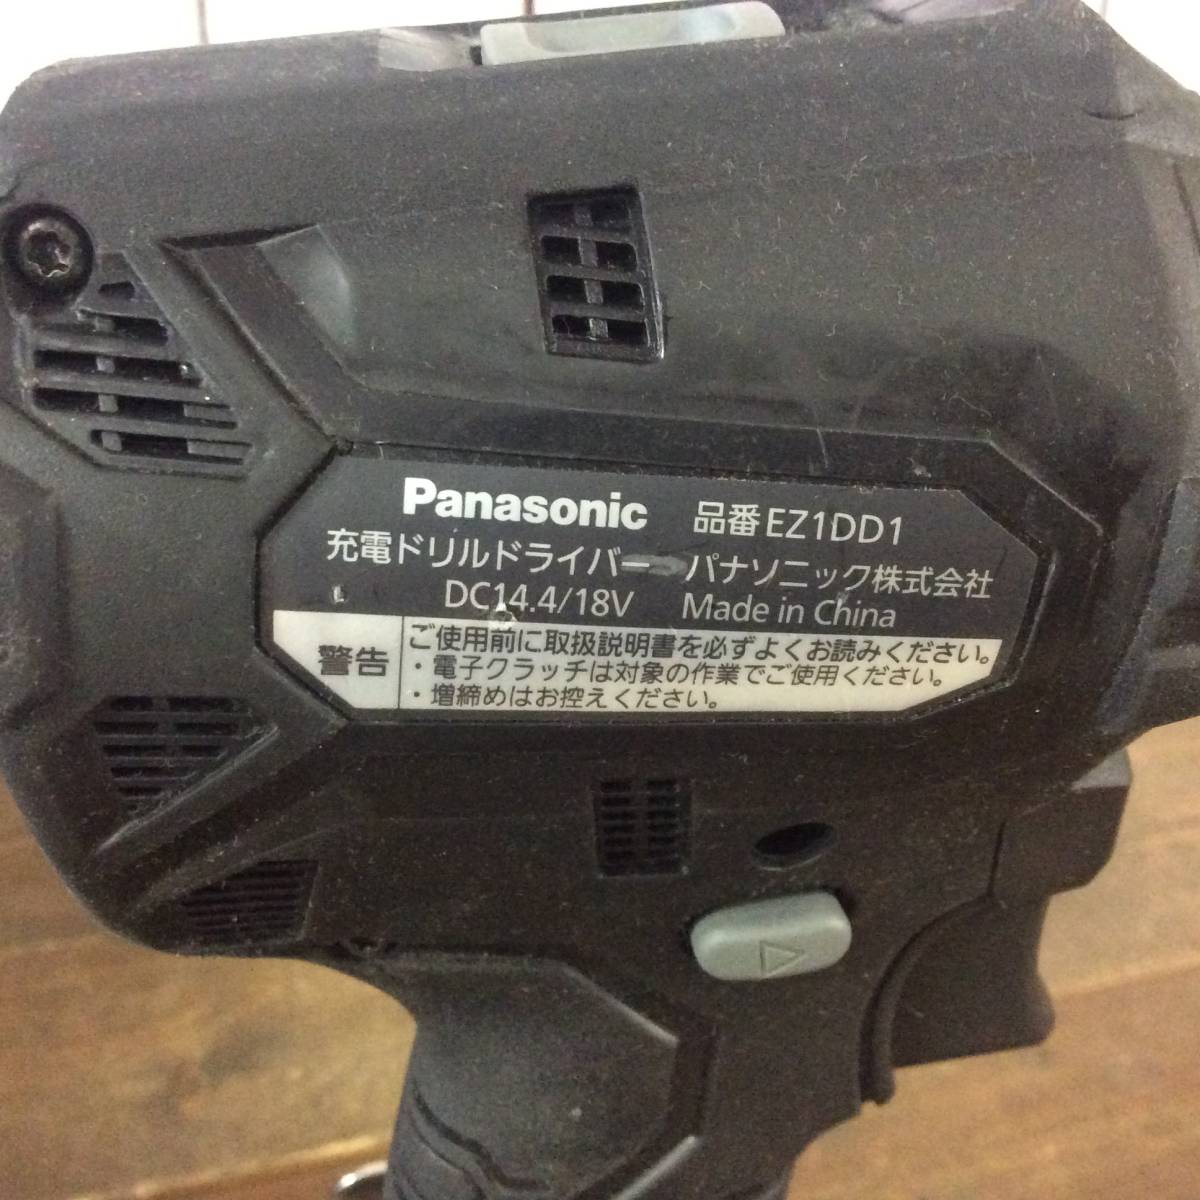 【RH-7012】中古品 Panasonic パナソニック 14.4V 18V 充電ドリルドライバー EZ1DD1 充電器 18V バッテリー2個セット_画像4